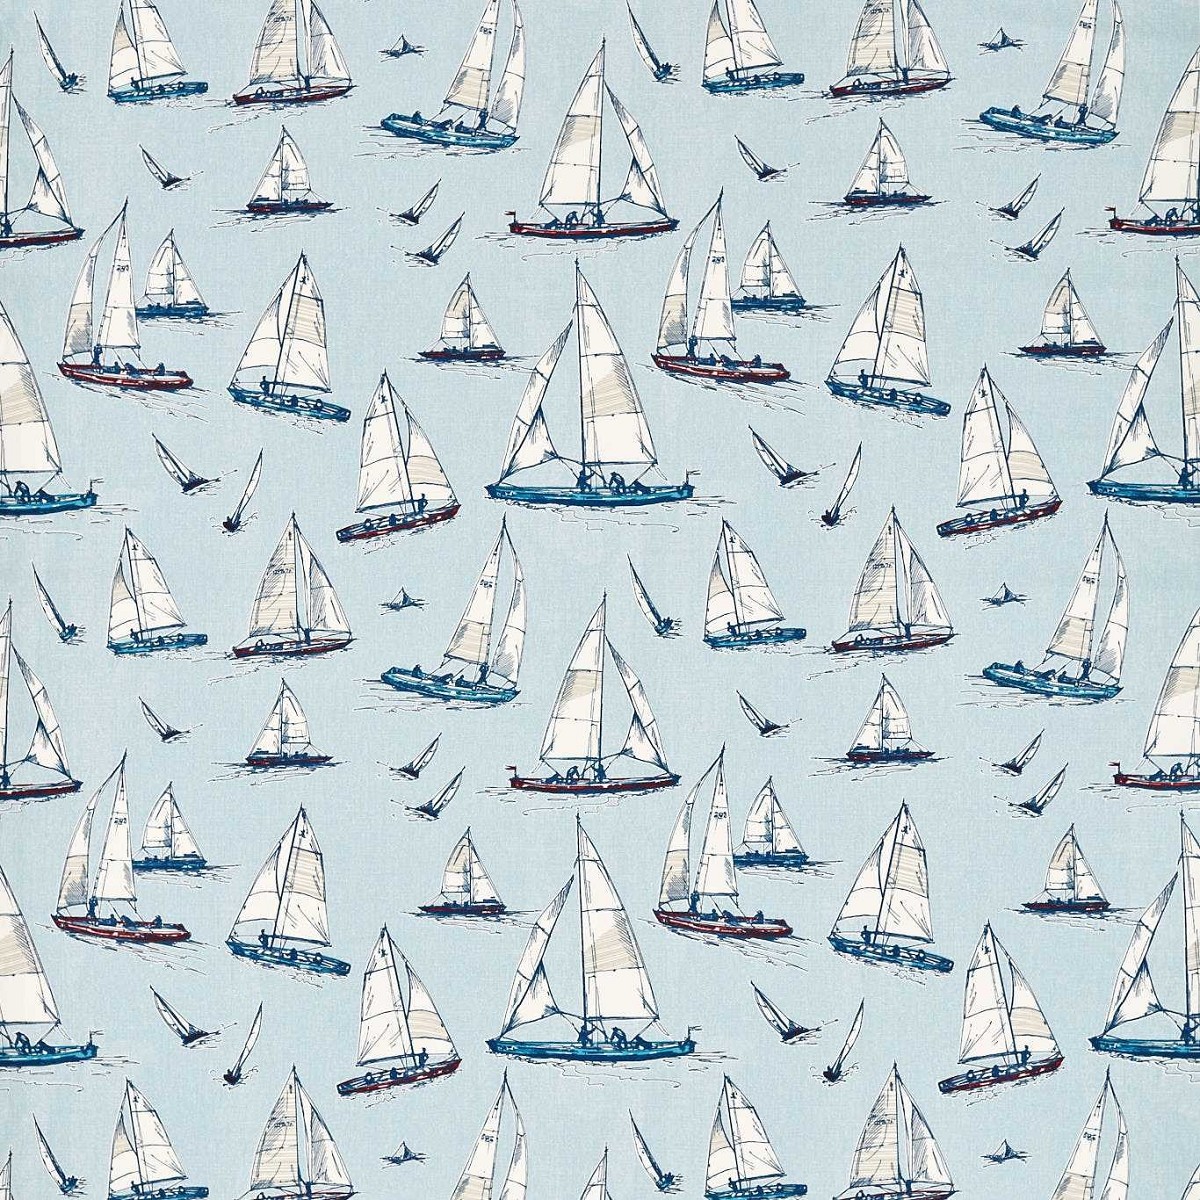 Sailing Yacht Marine Fabric by Studio G